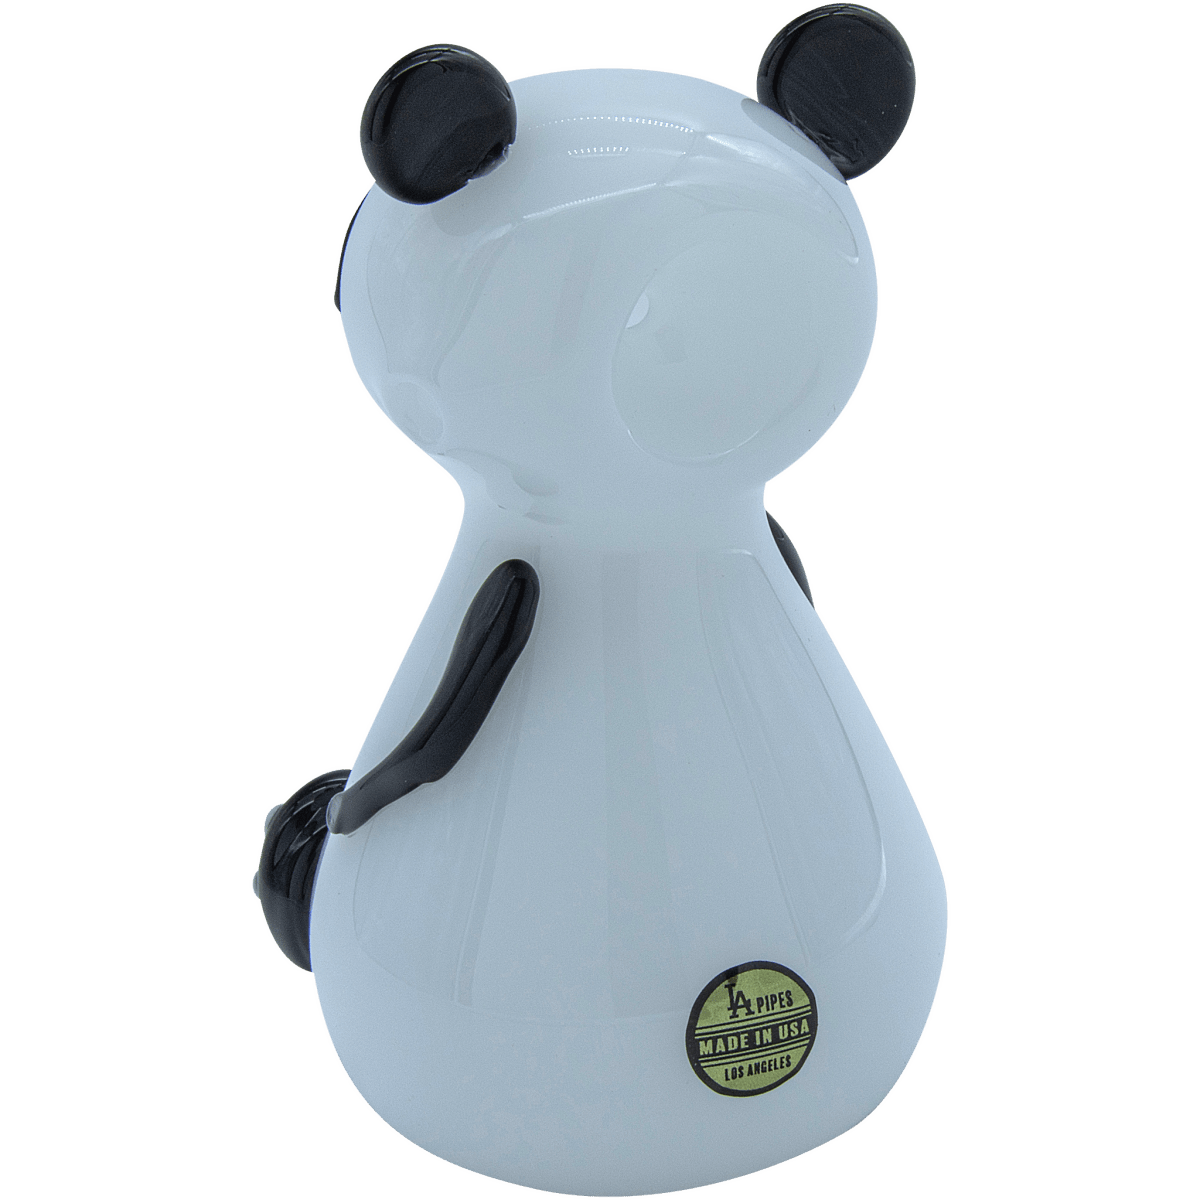 LA Pipes Hand Pipe "Bored Panda" Glass Pipe